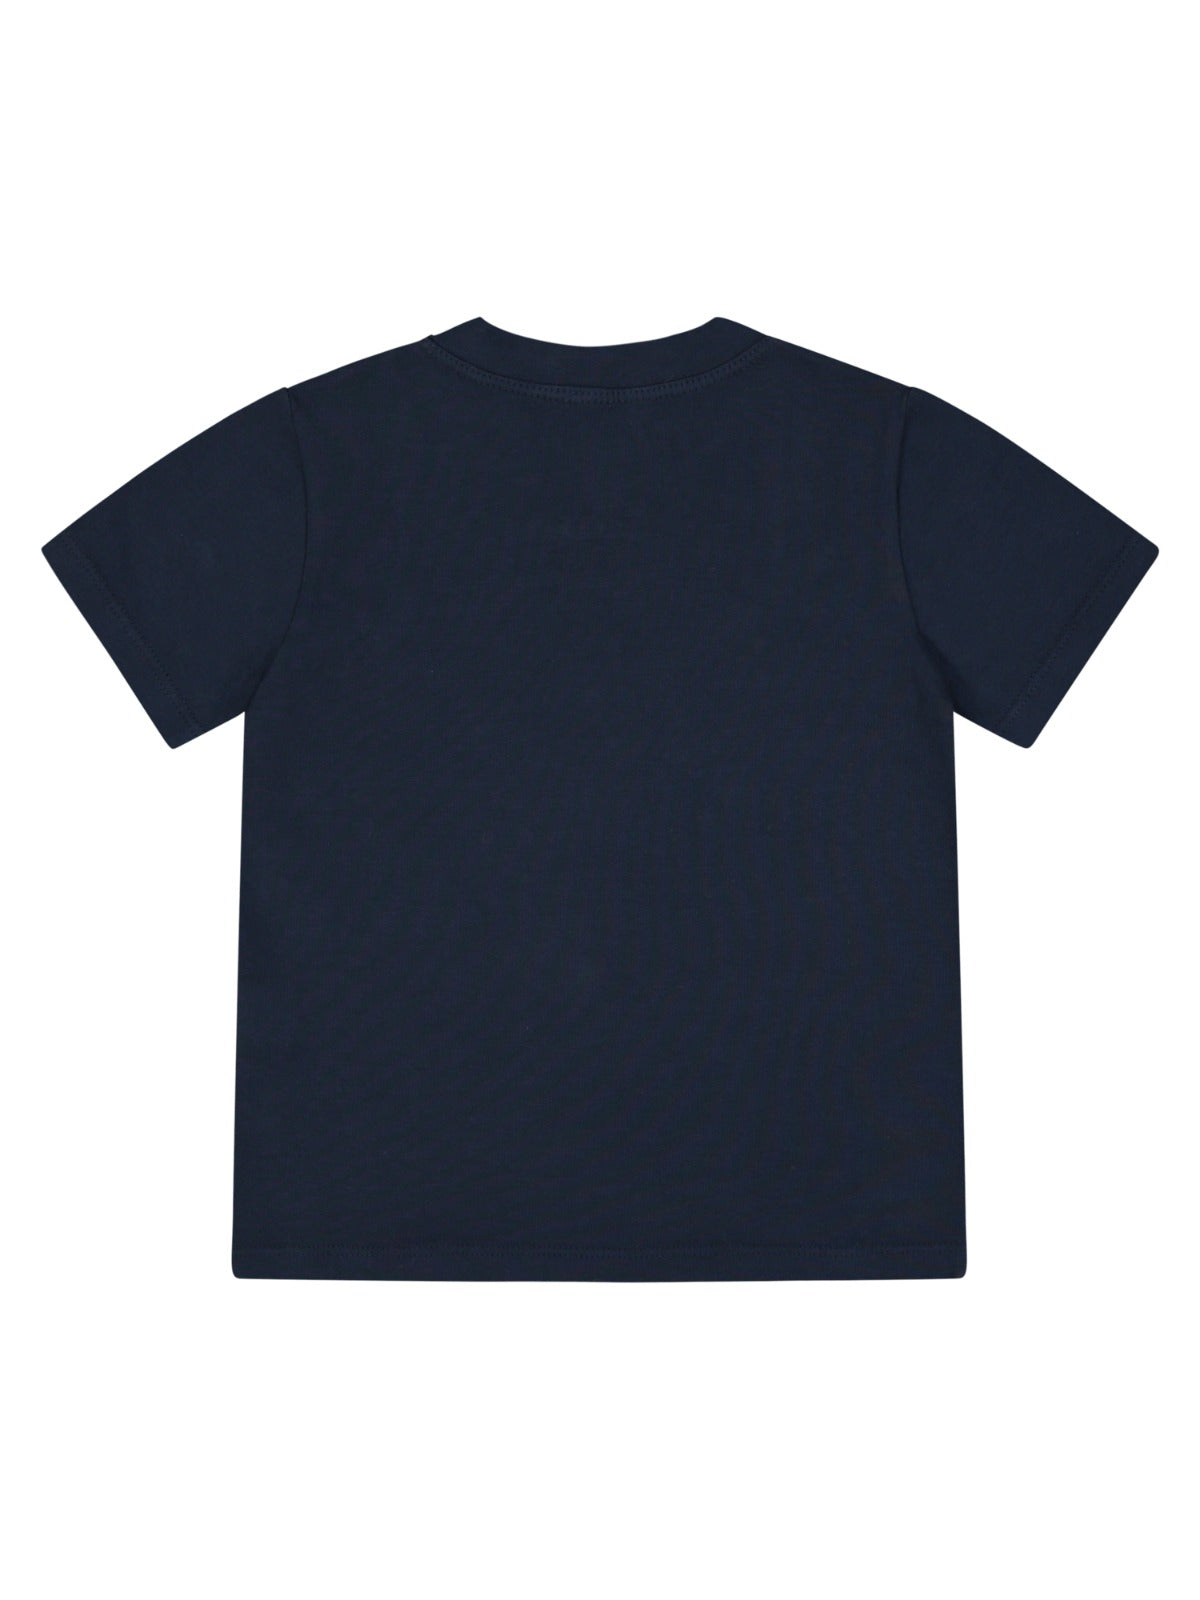 T-shirt blu cotone bio